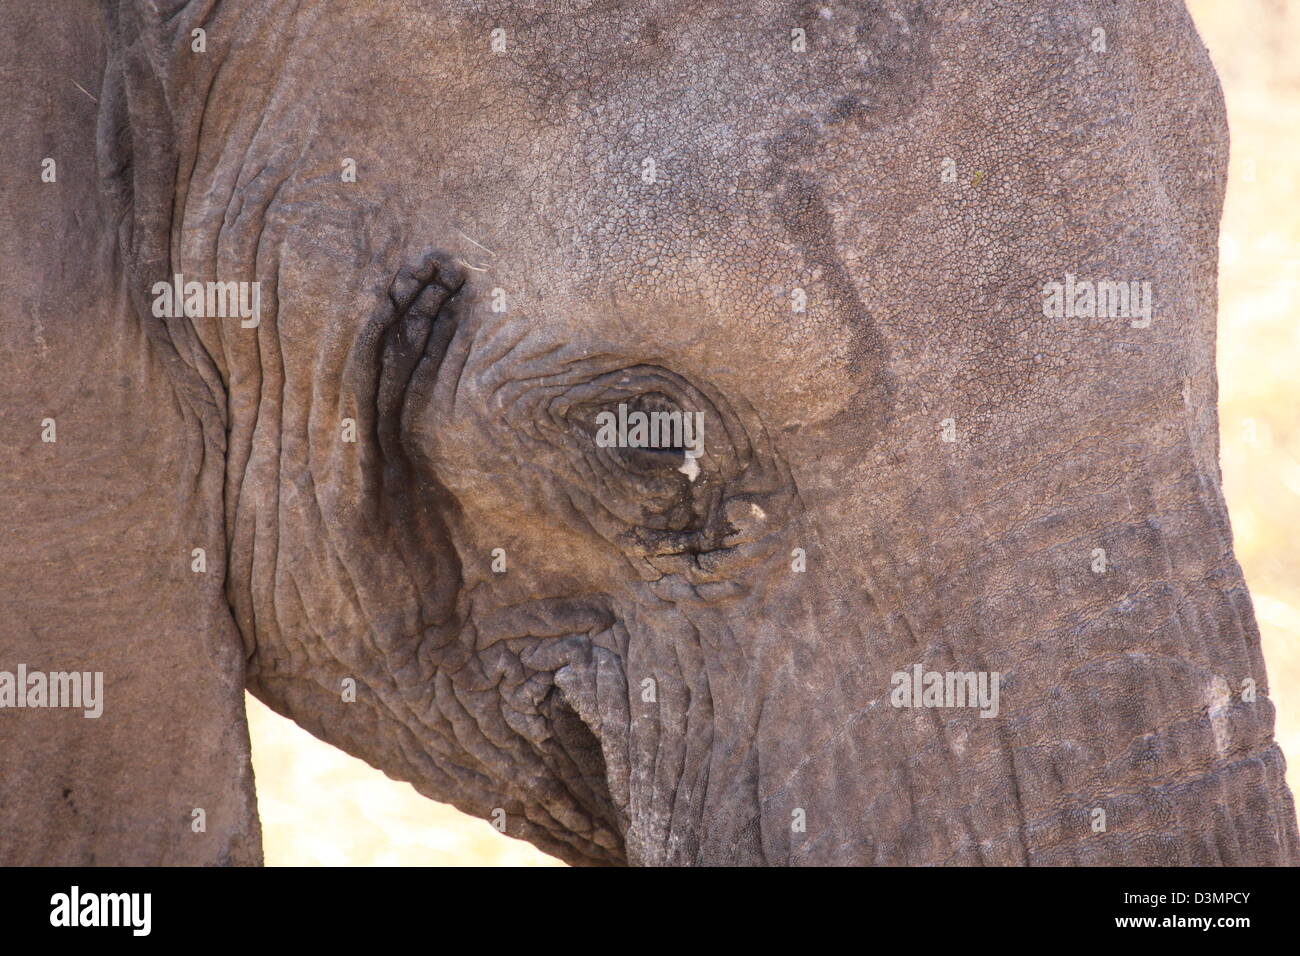 Elephant's head, Etosha National Park, Namibia Stock Photo